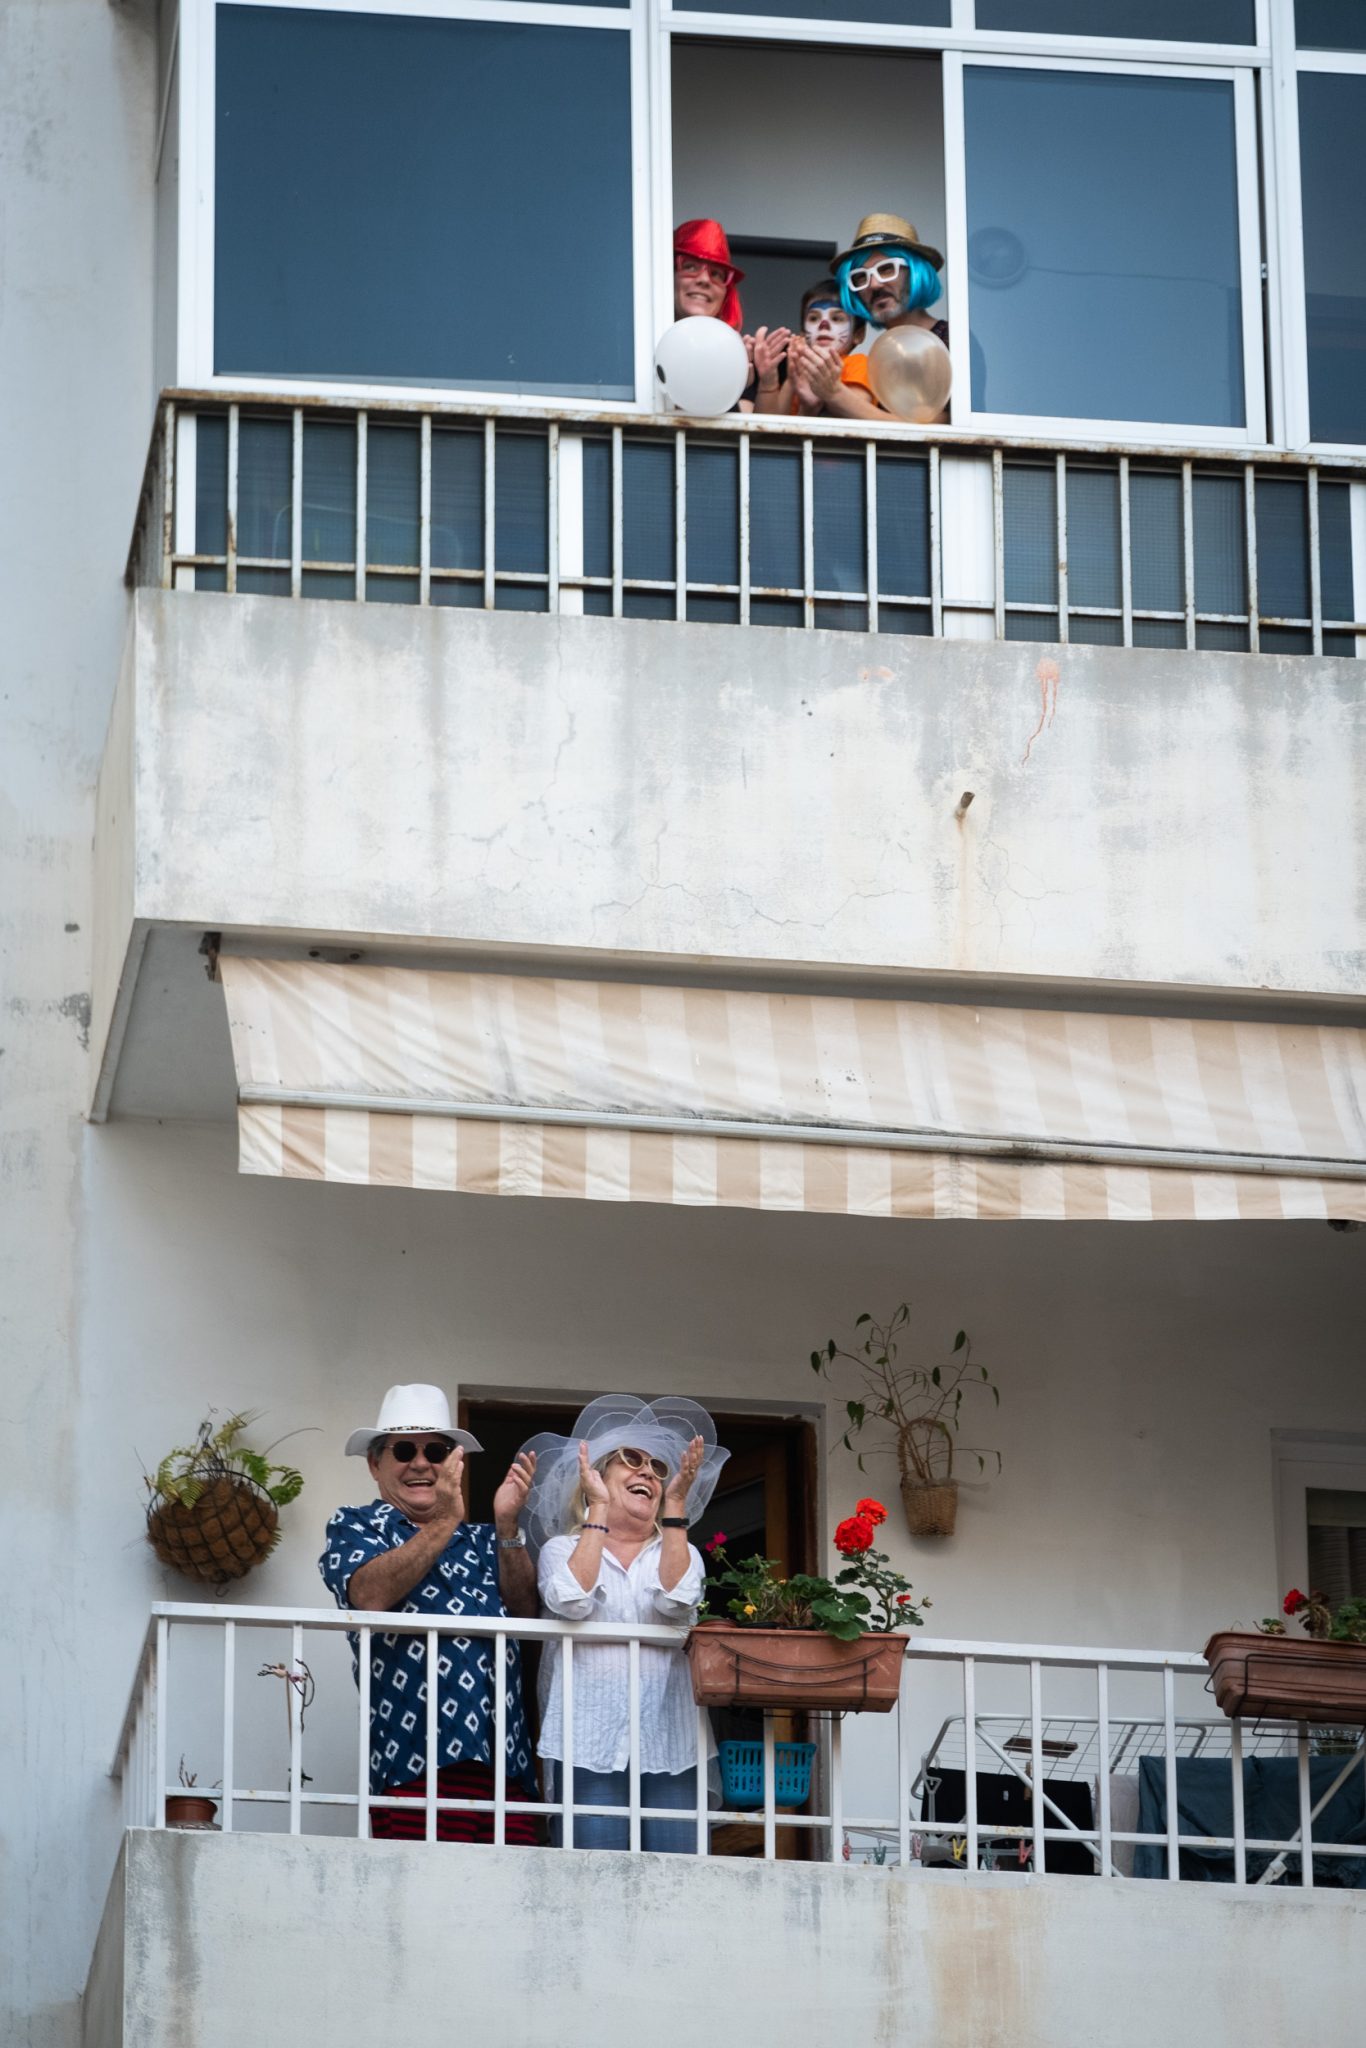 Estos vecinos llevan con alegría su responsable acto de cumplir con el estado de alarma. FOTO: Fran Pallero.